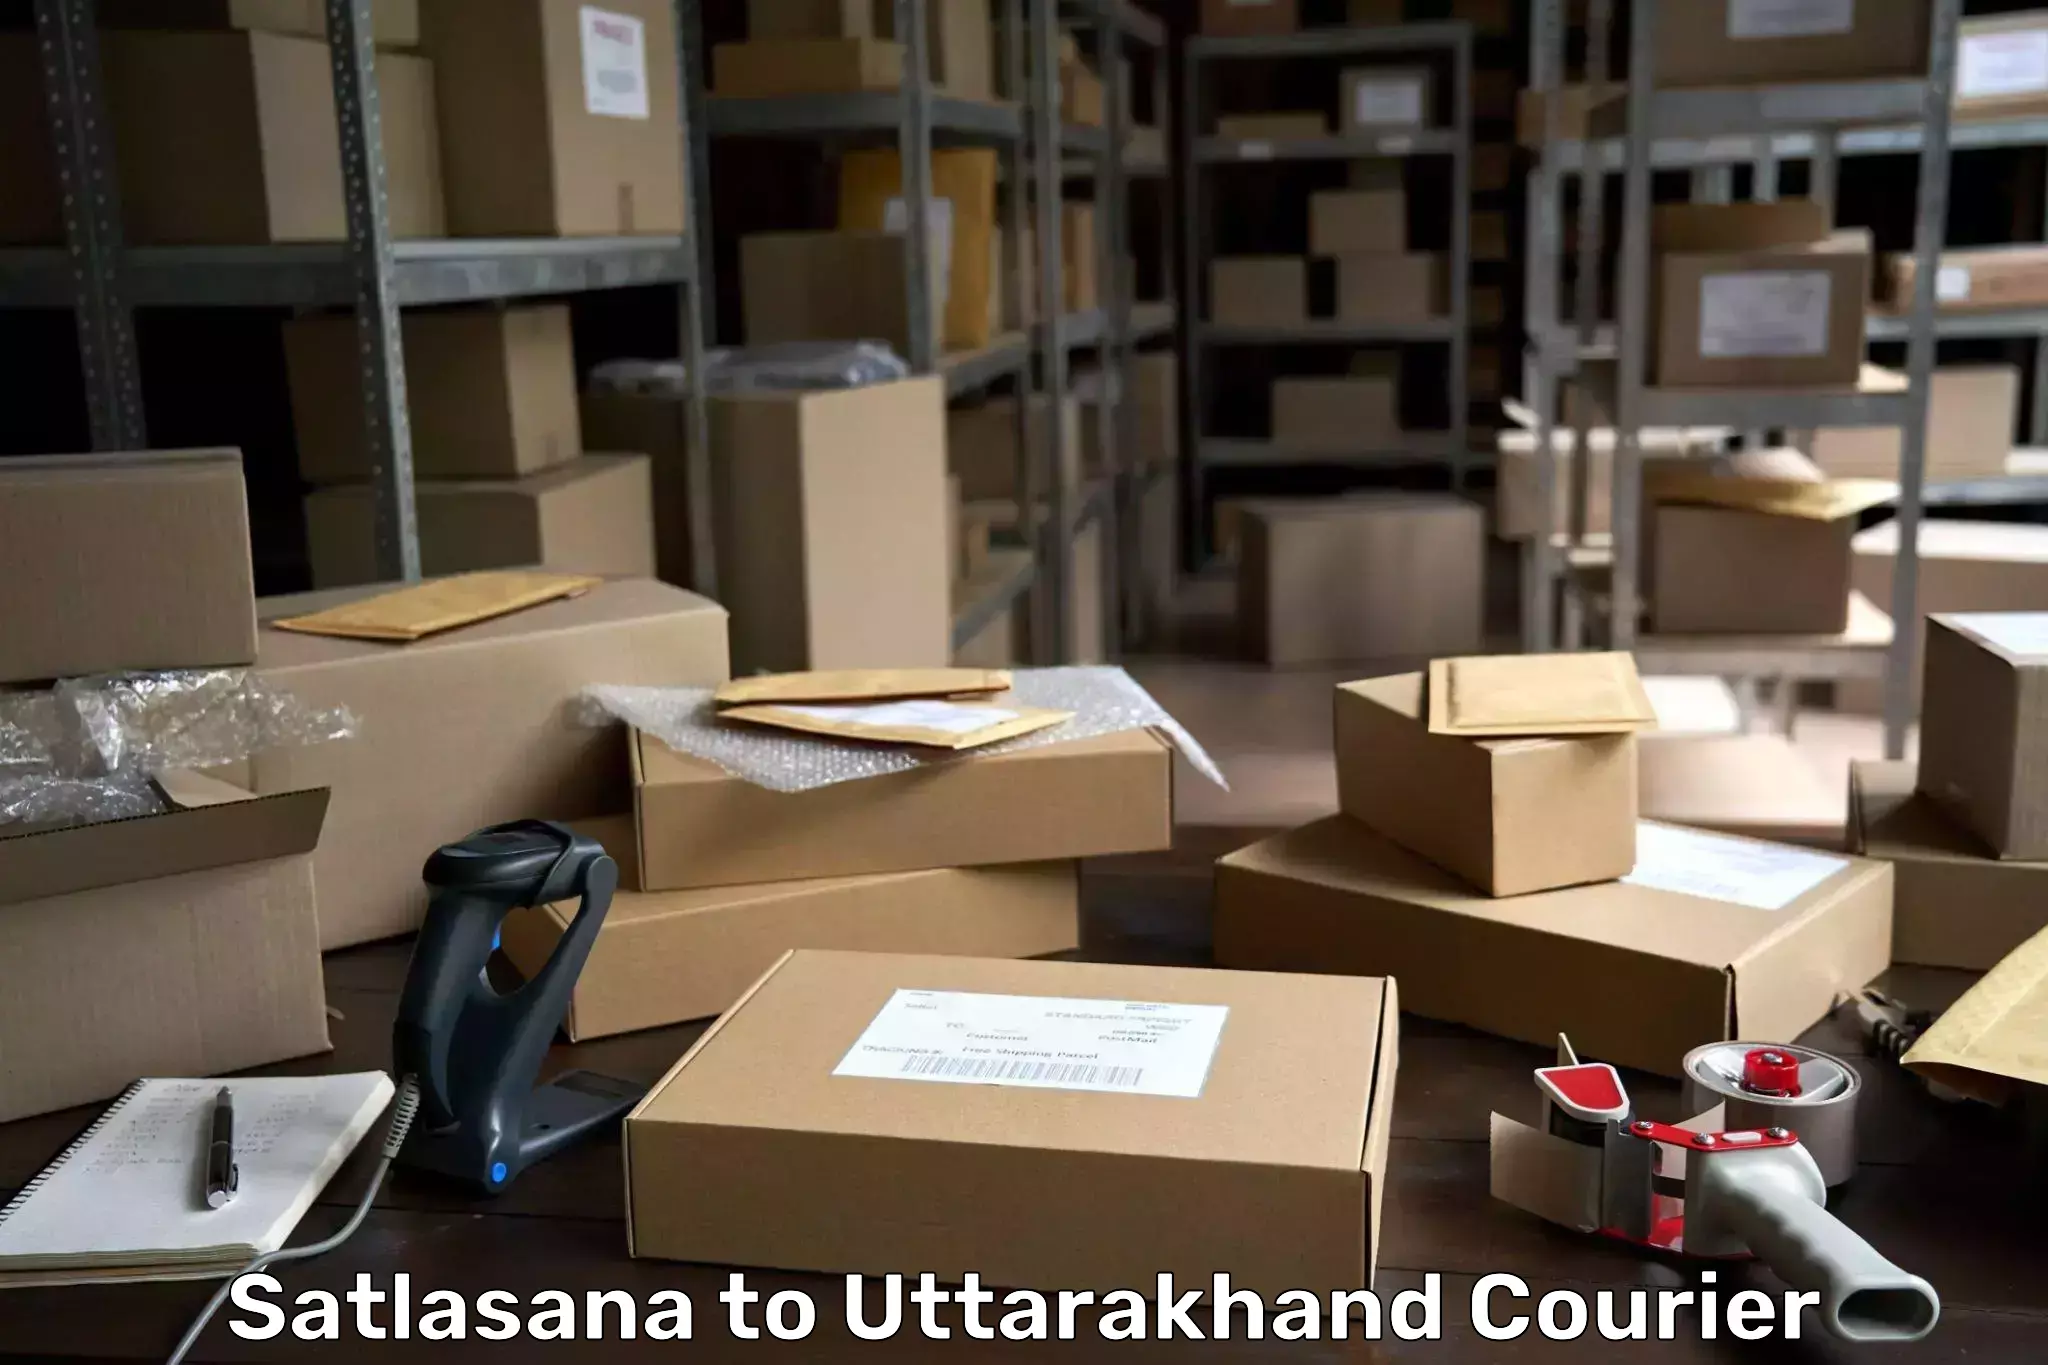 Express delivery capabilities Satlasana to Uttarakhand